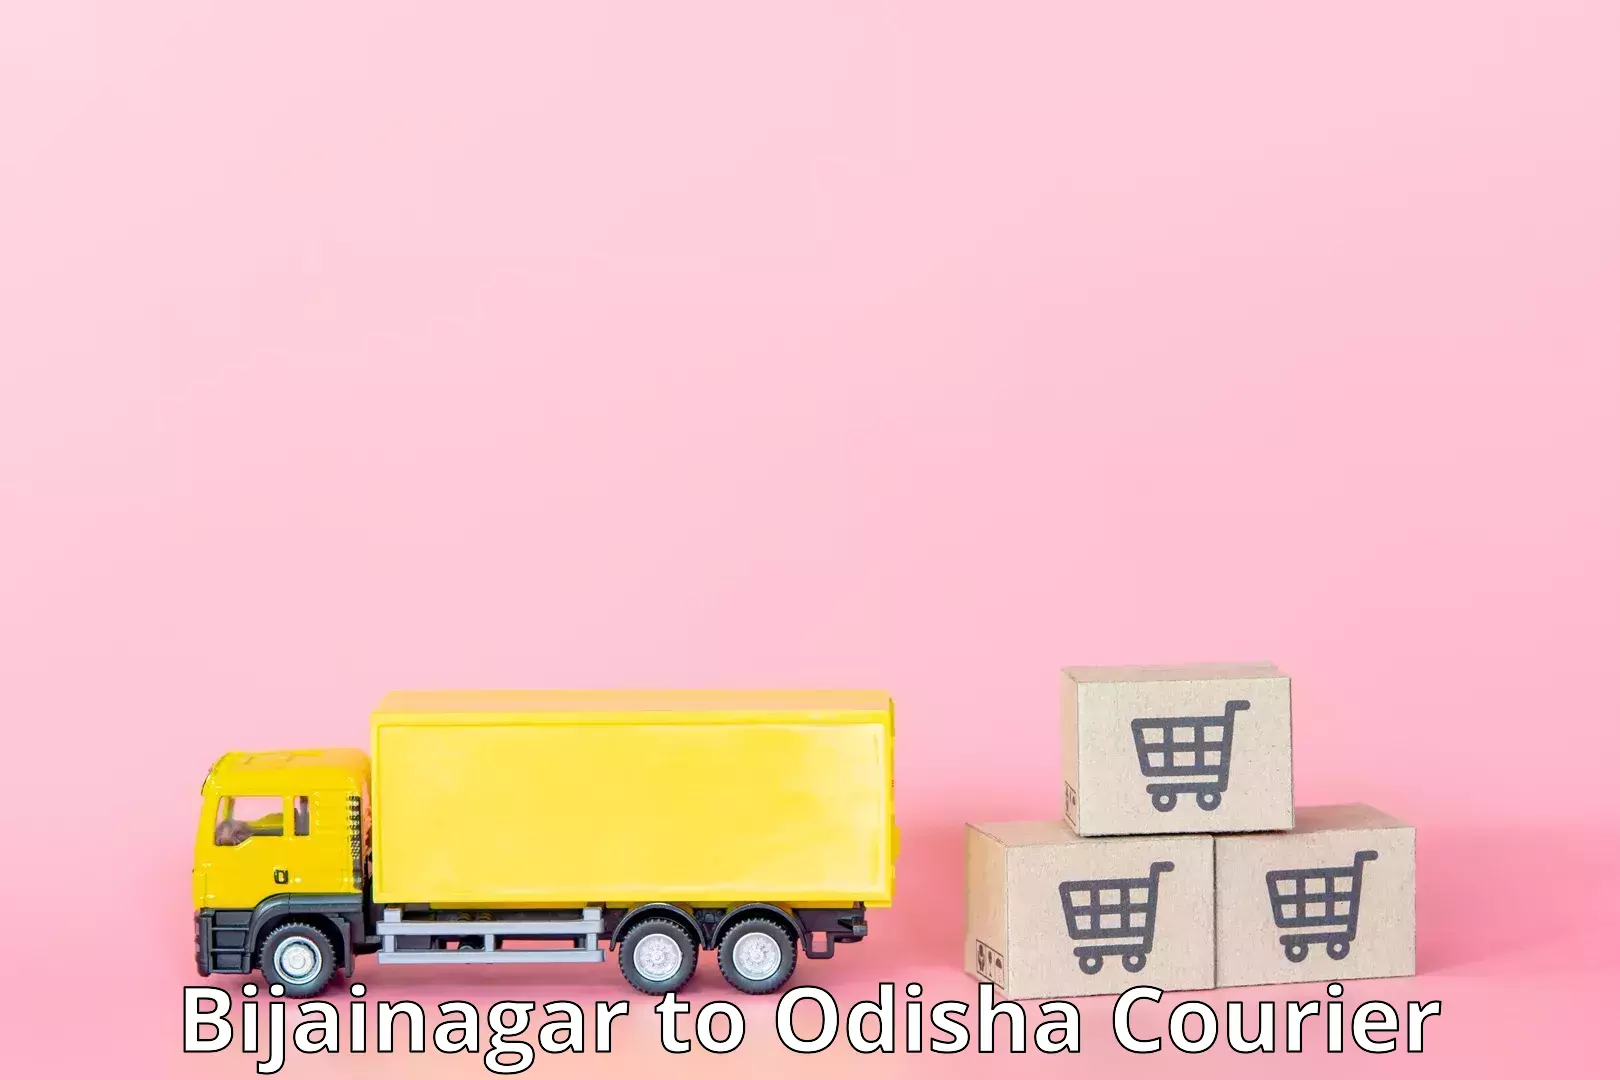 Courier service booking in Bijainagar to Odisha